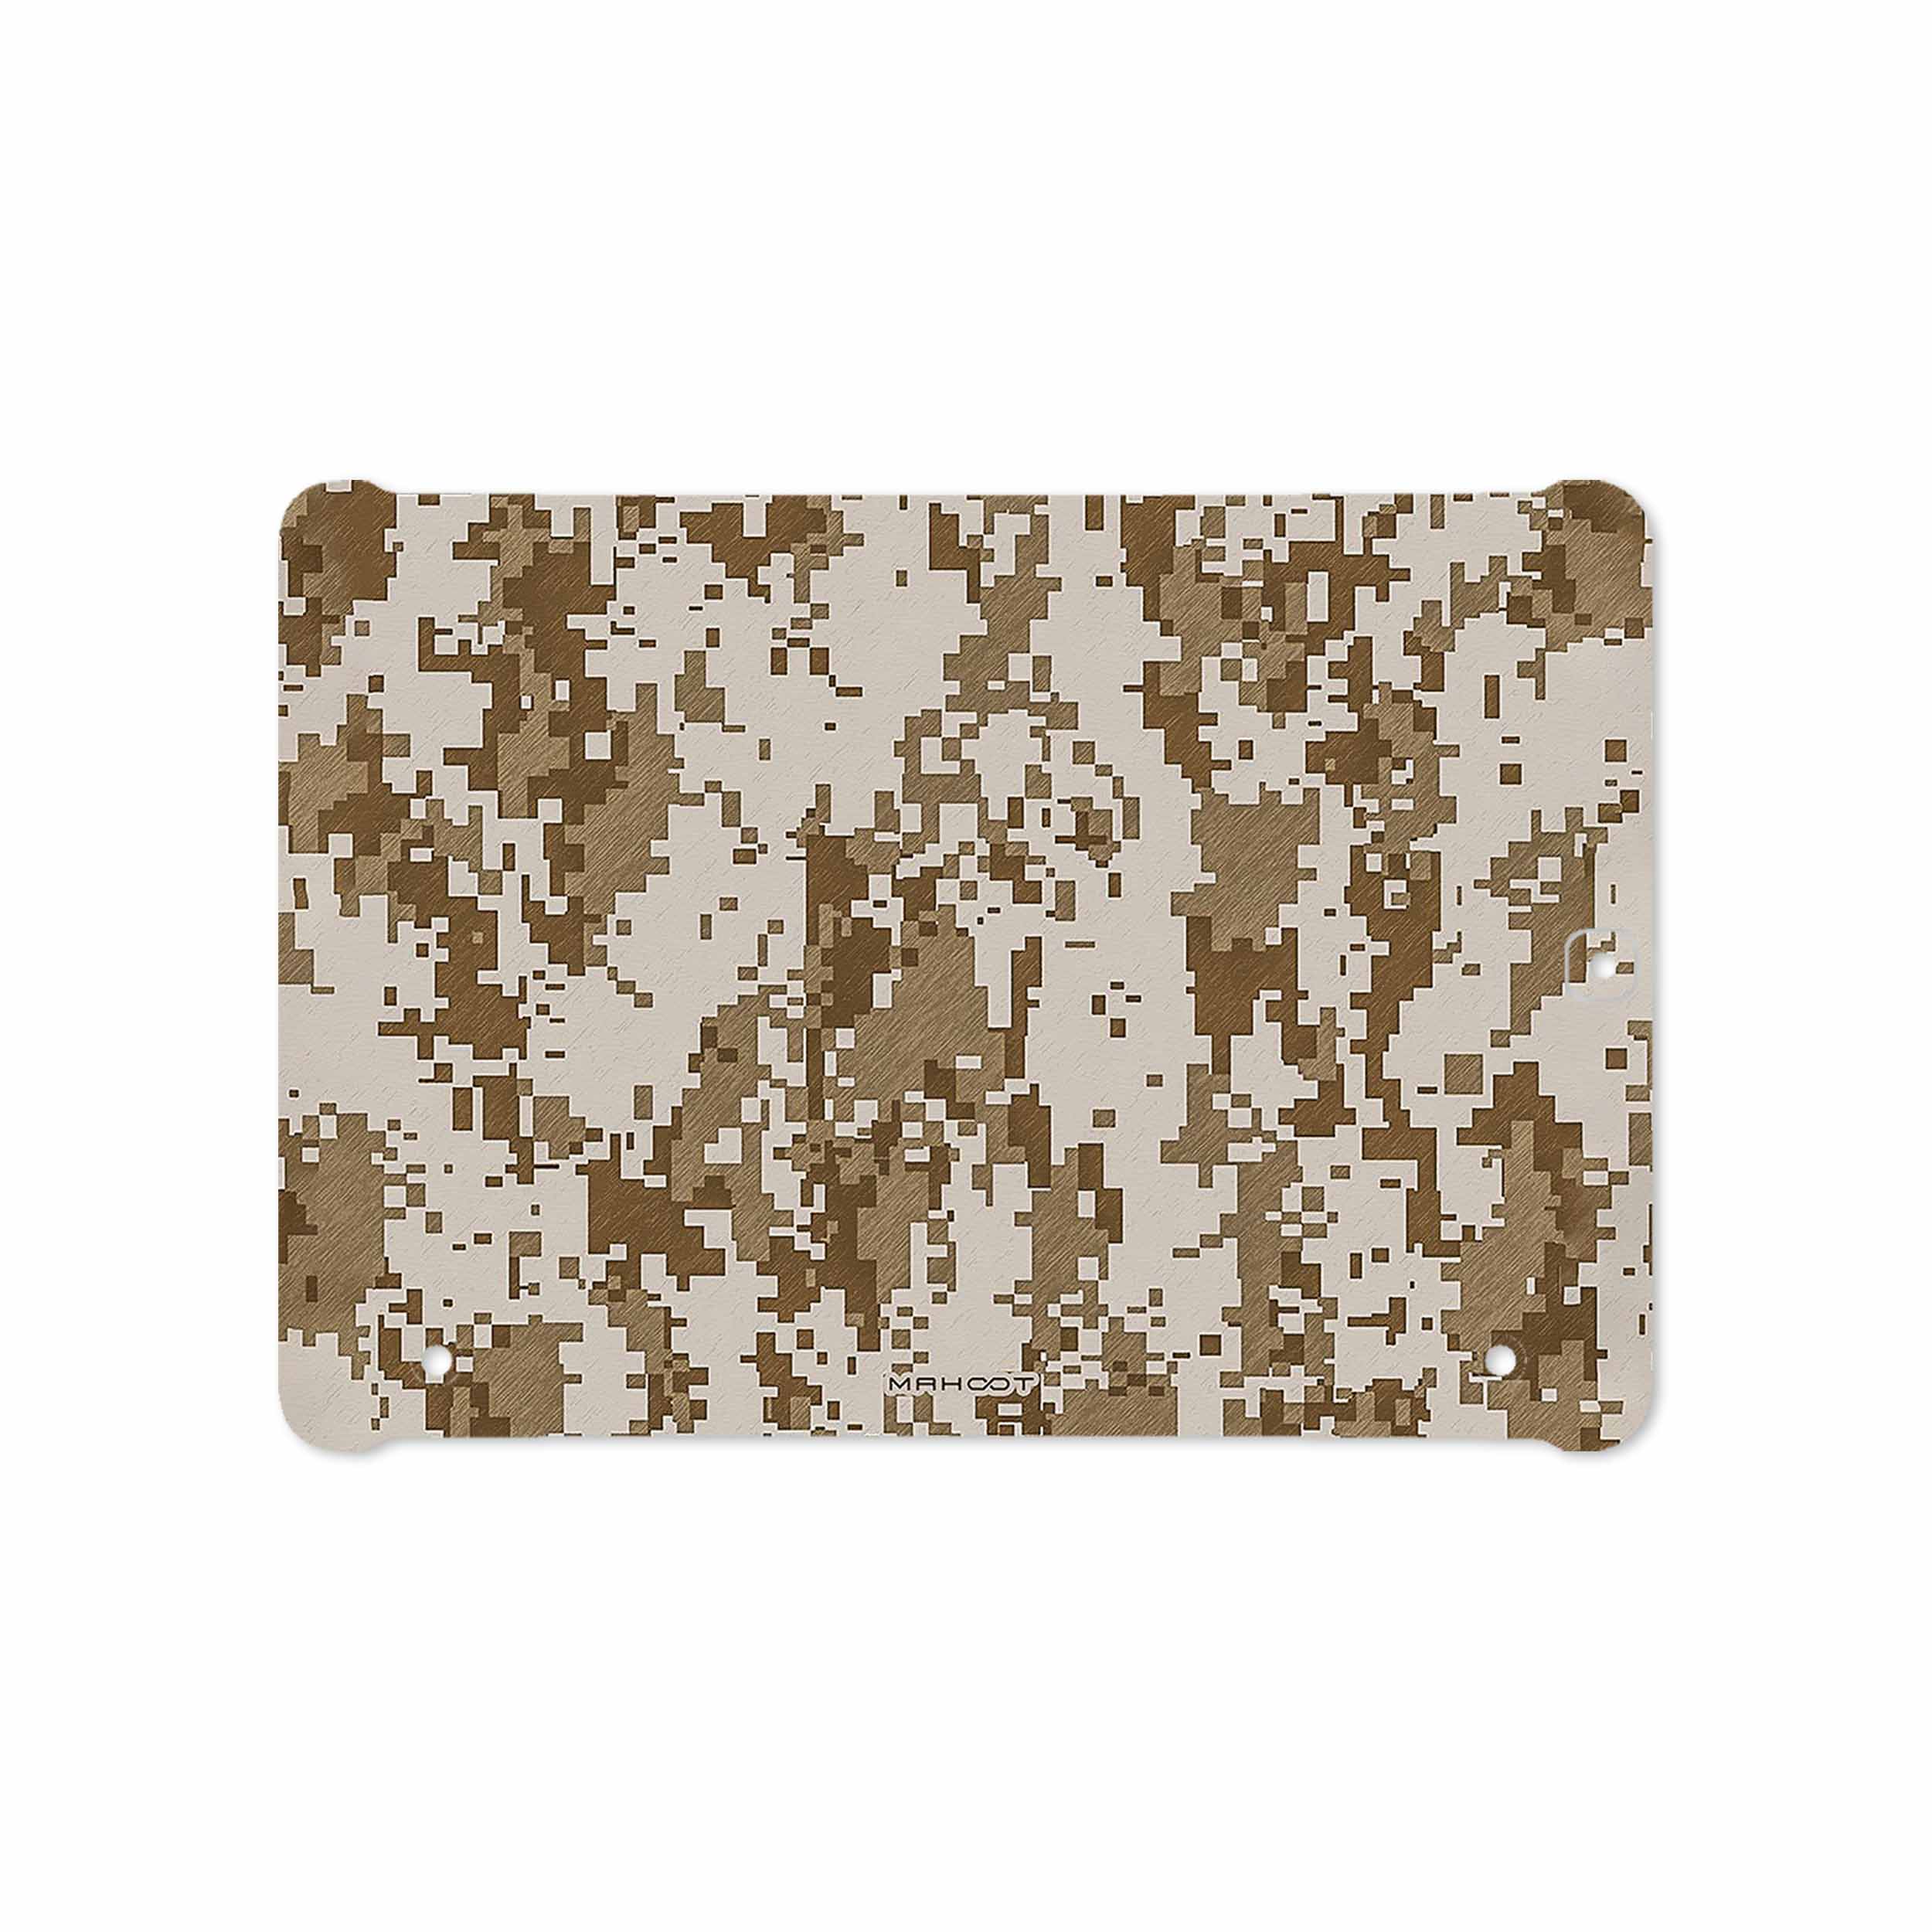 برچسب پوششی ماهوت مدل Army-Desert-Pixel مناسب برای تبلت سامسونگ Galaxy Tab S2 9.7 2015 T815